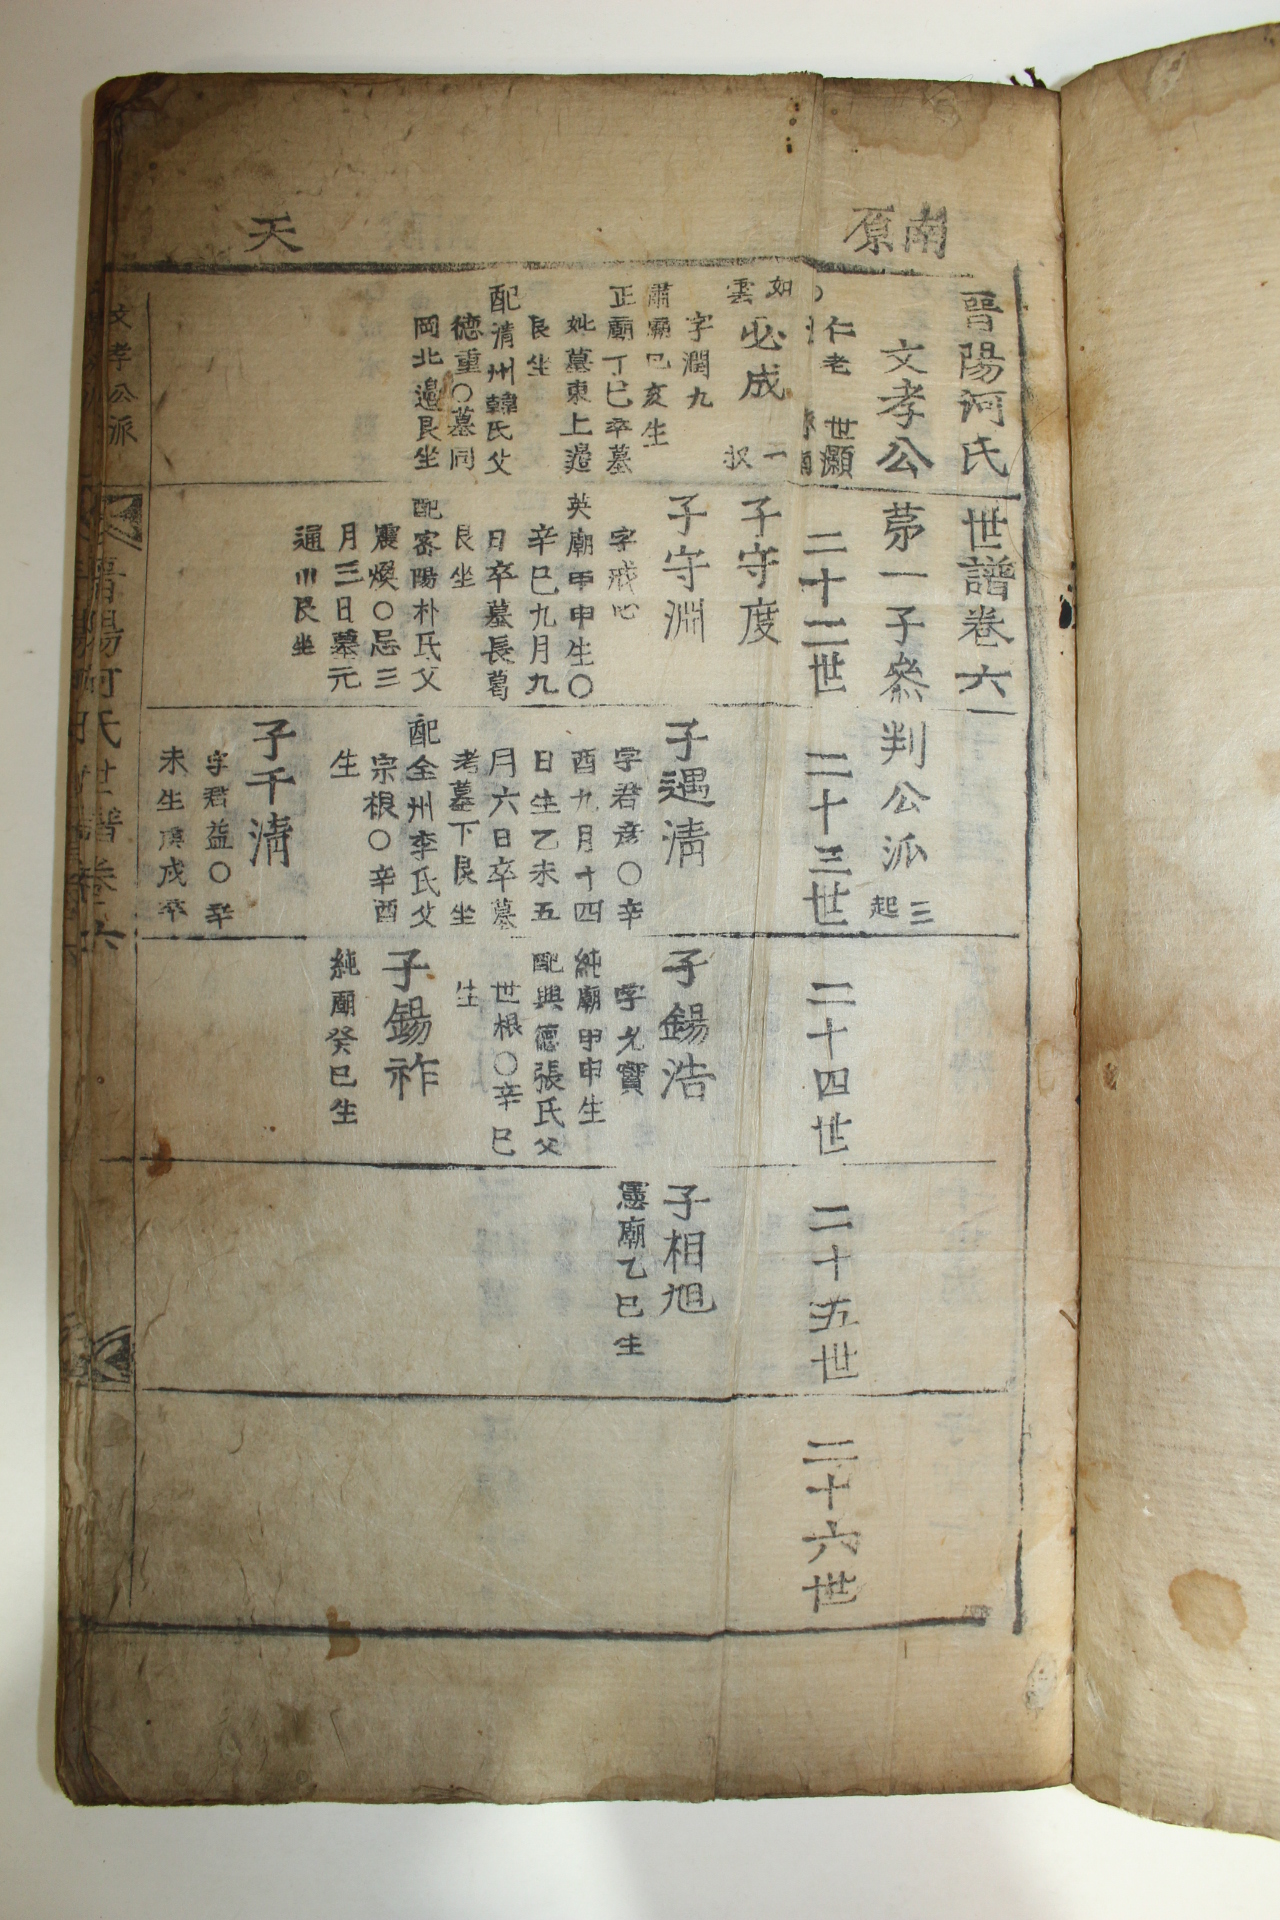 1857년(丁巳年) 목활자본 진양하씨세보(晋陽河氏世譜) 6권6책완질